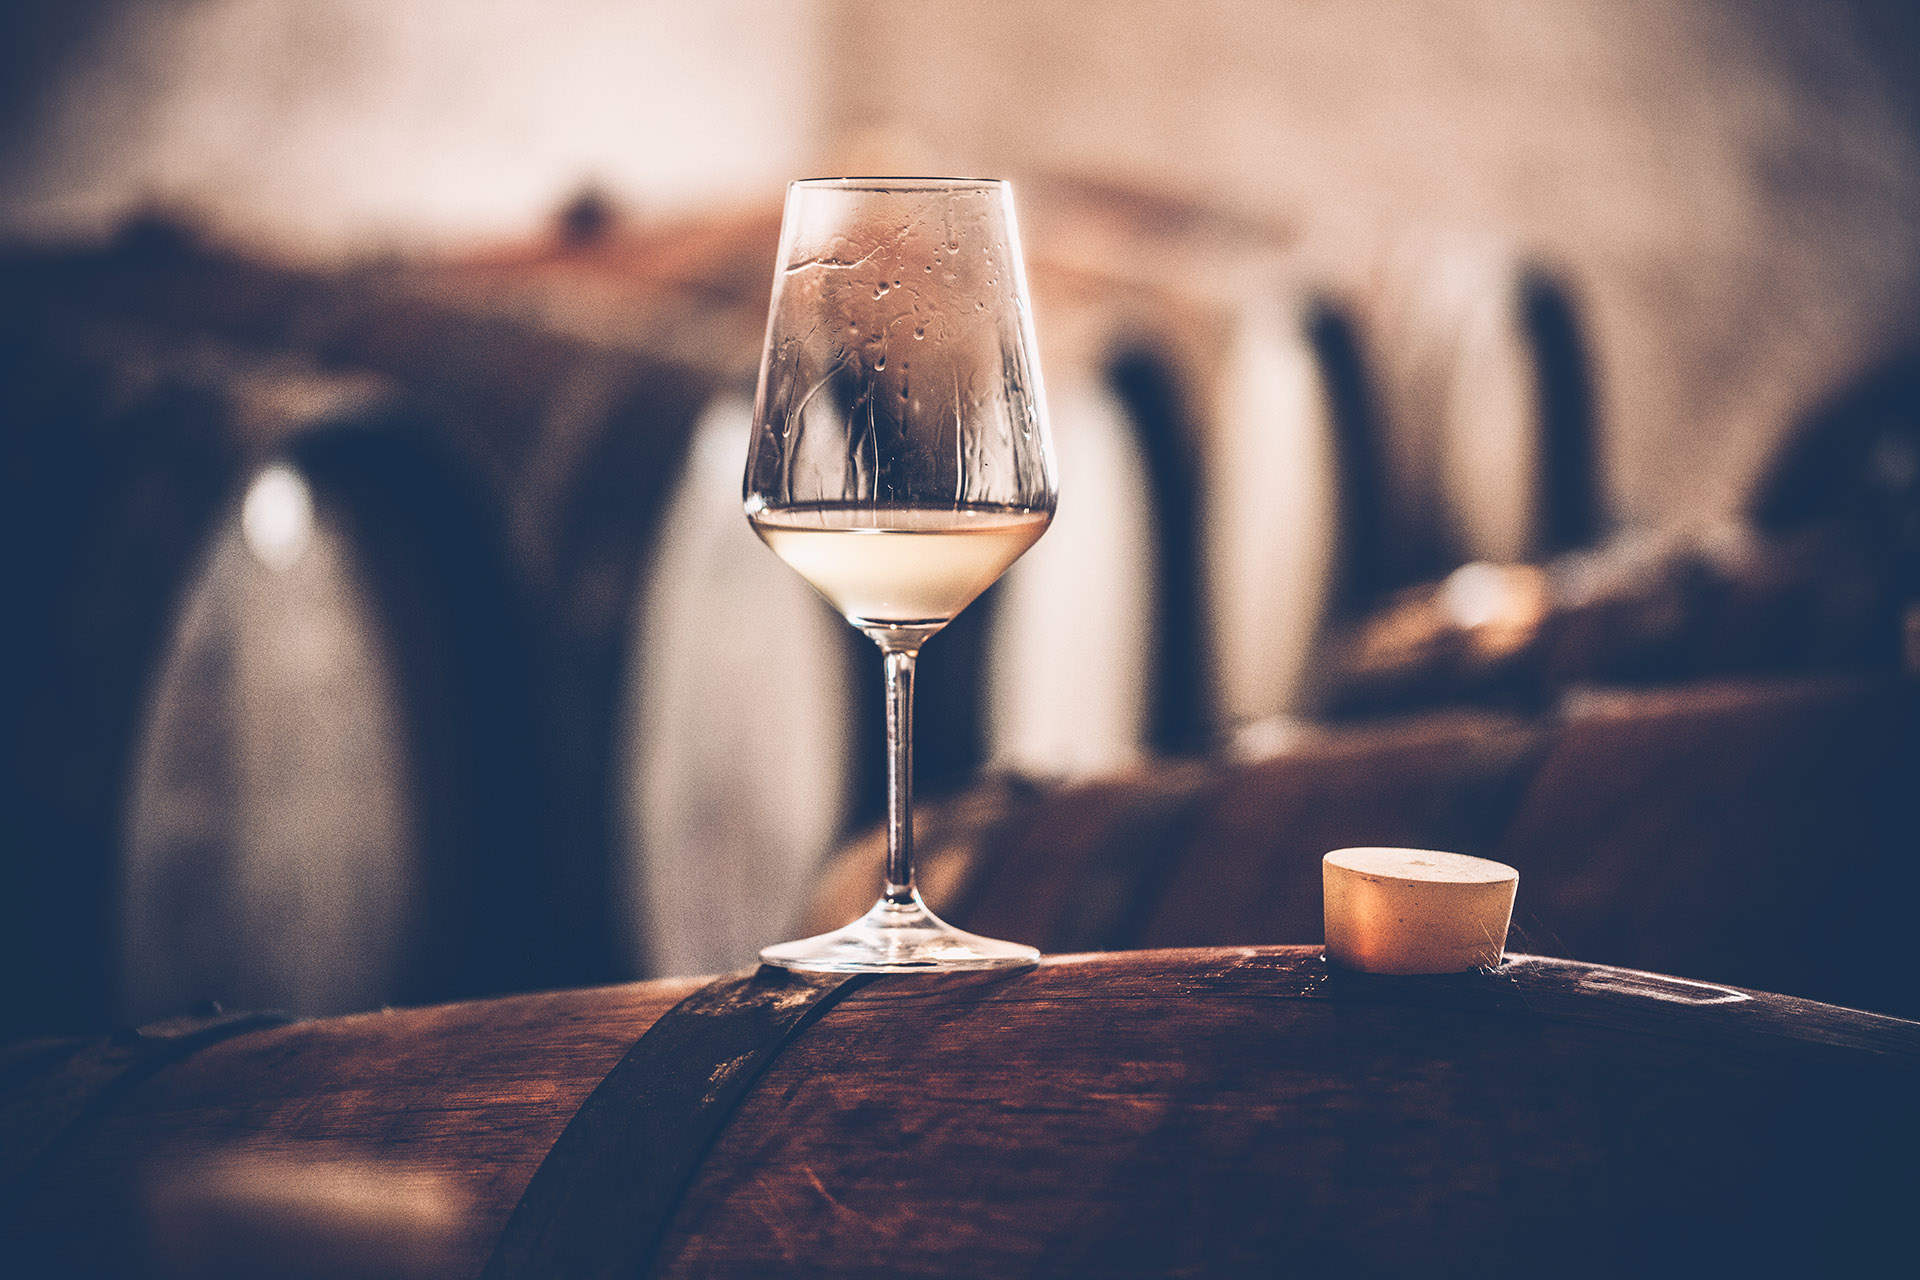 Vinho branco pode ser envelhecido, mas algumas características são essenciais